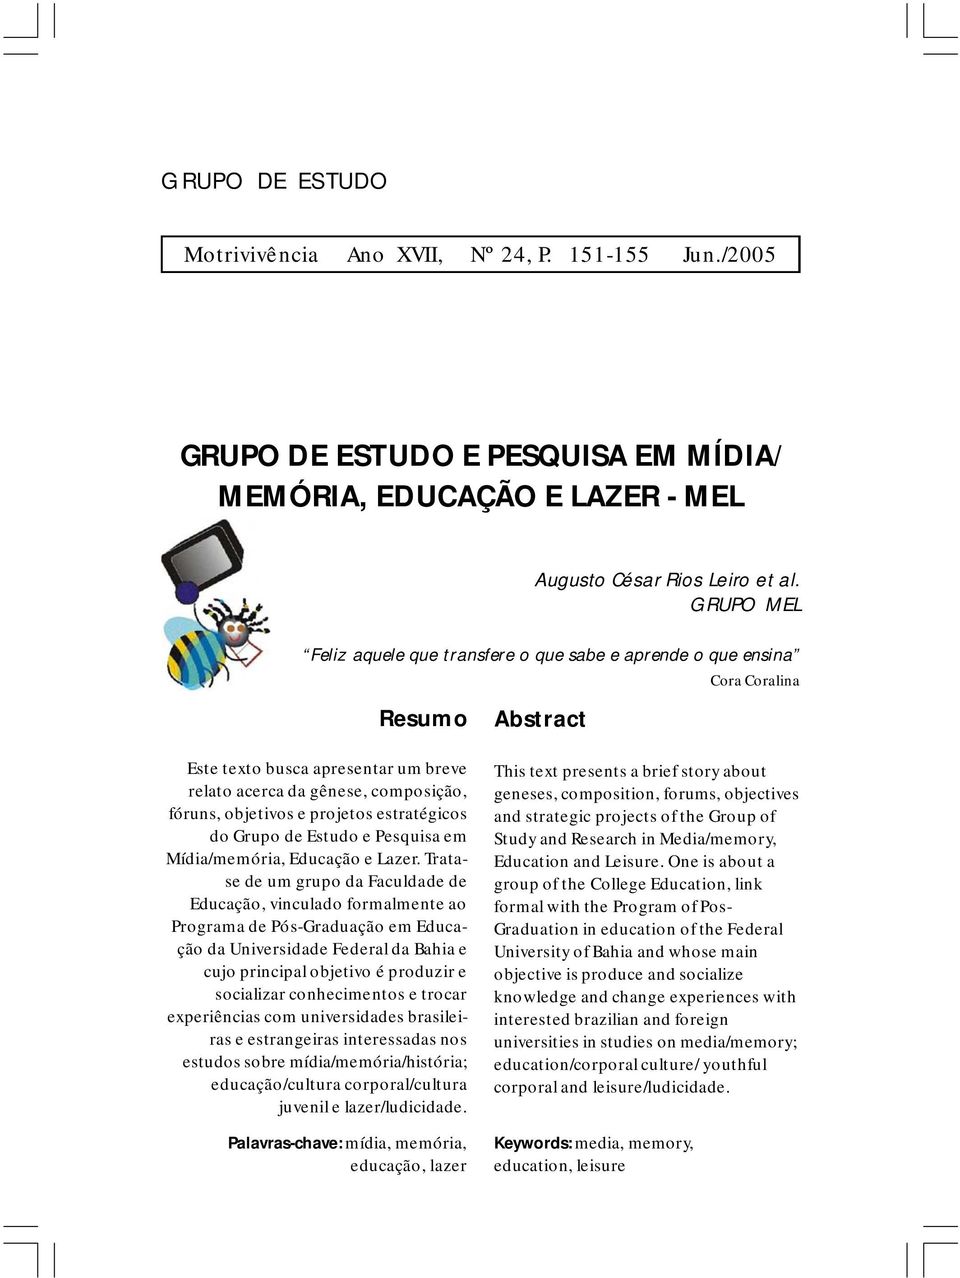 projetos estratégicos do Grupo de Estudo e Pesquisa em Mídia/memória, Educação e Lazer.